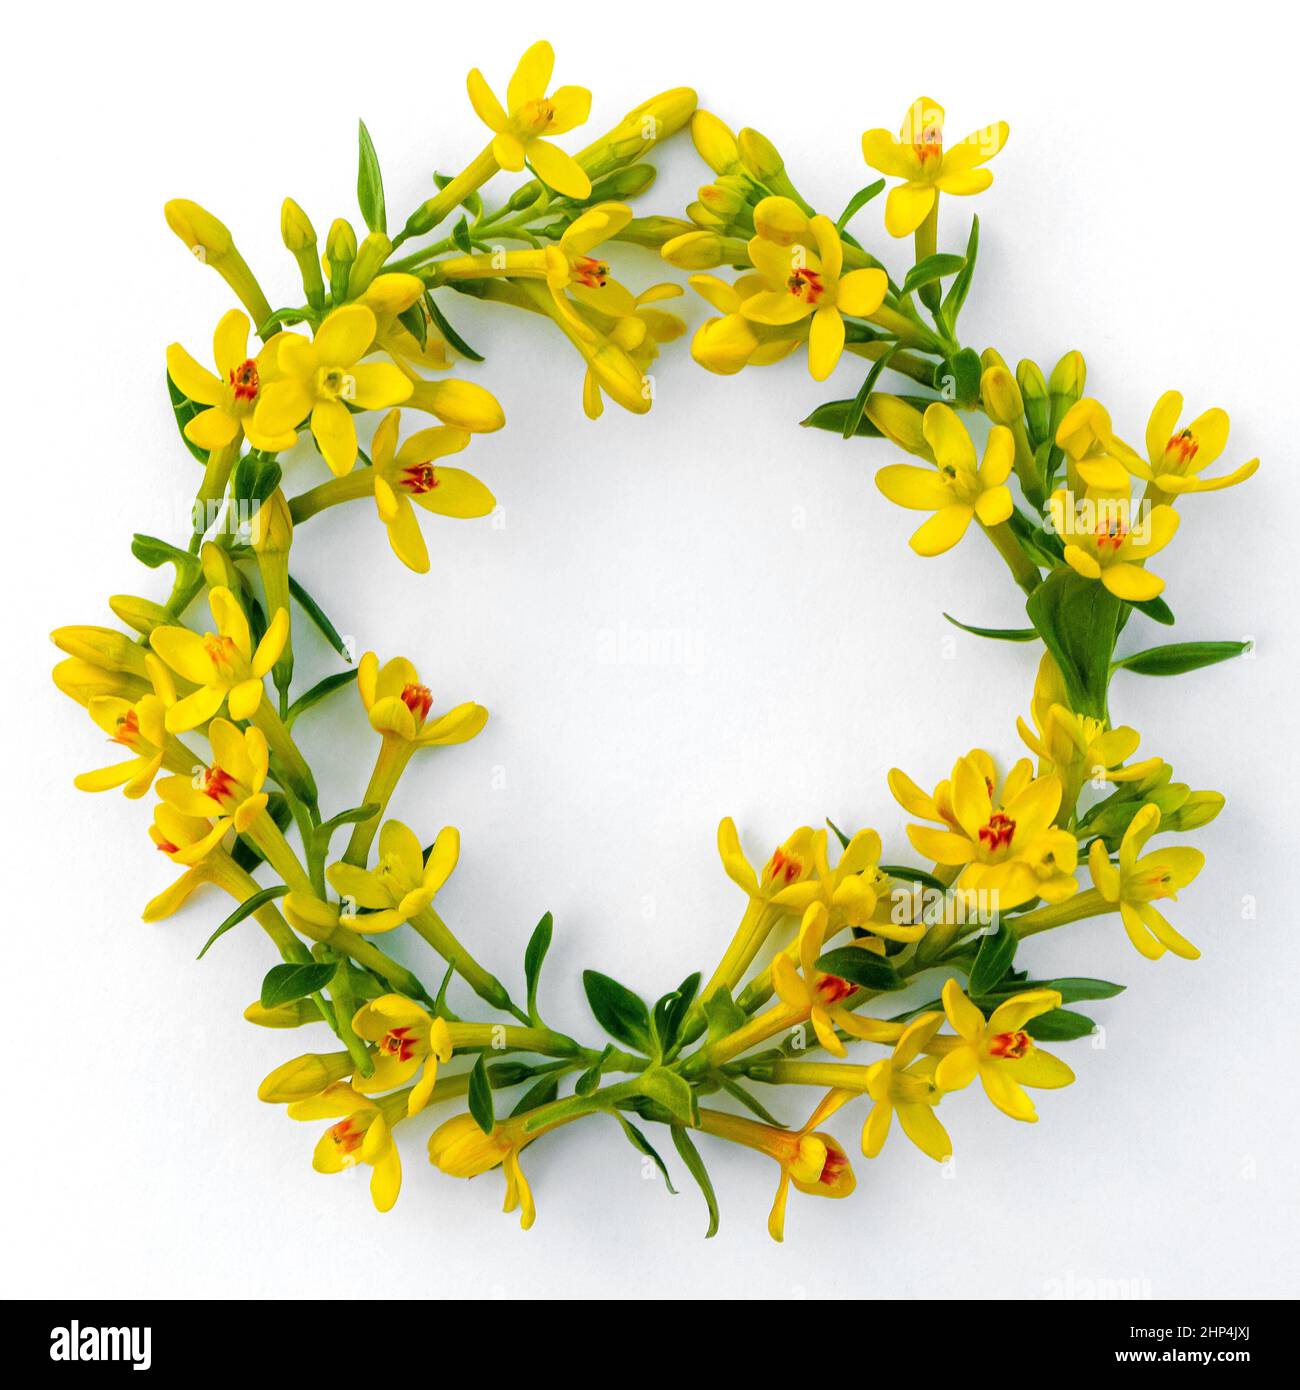 cadre composé de nombreuses petites brindilles avec des fleurs de printemps jaunes sur un fond blanc Banque D'Images